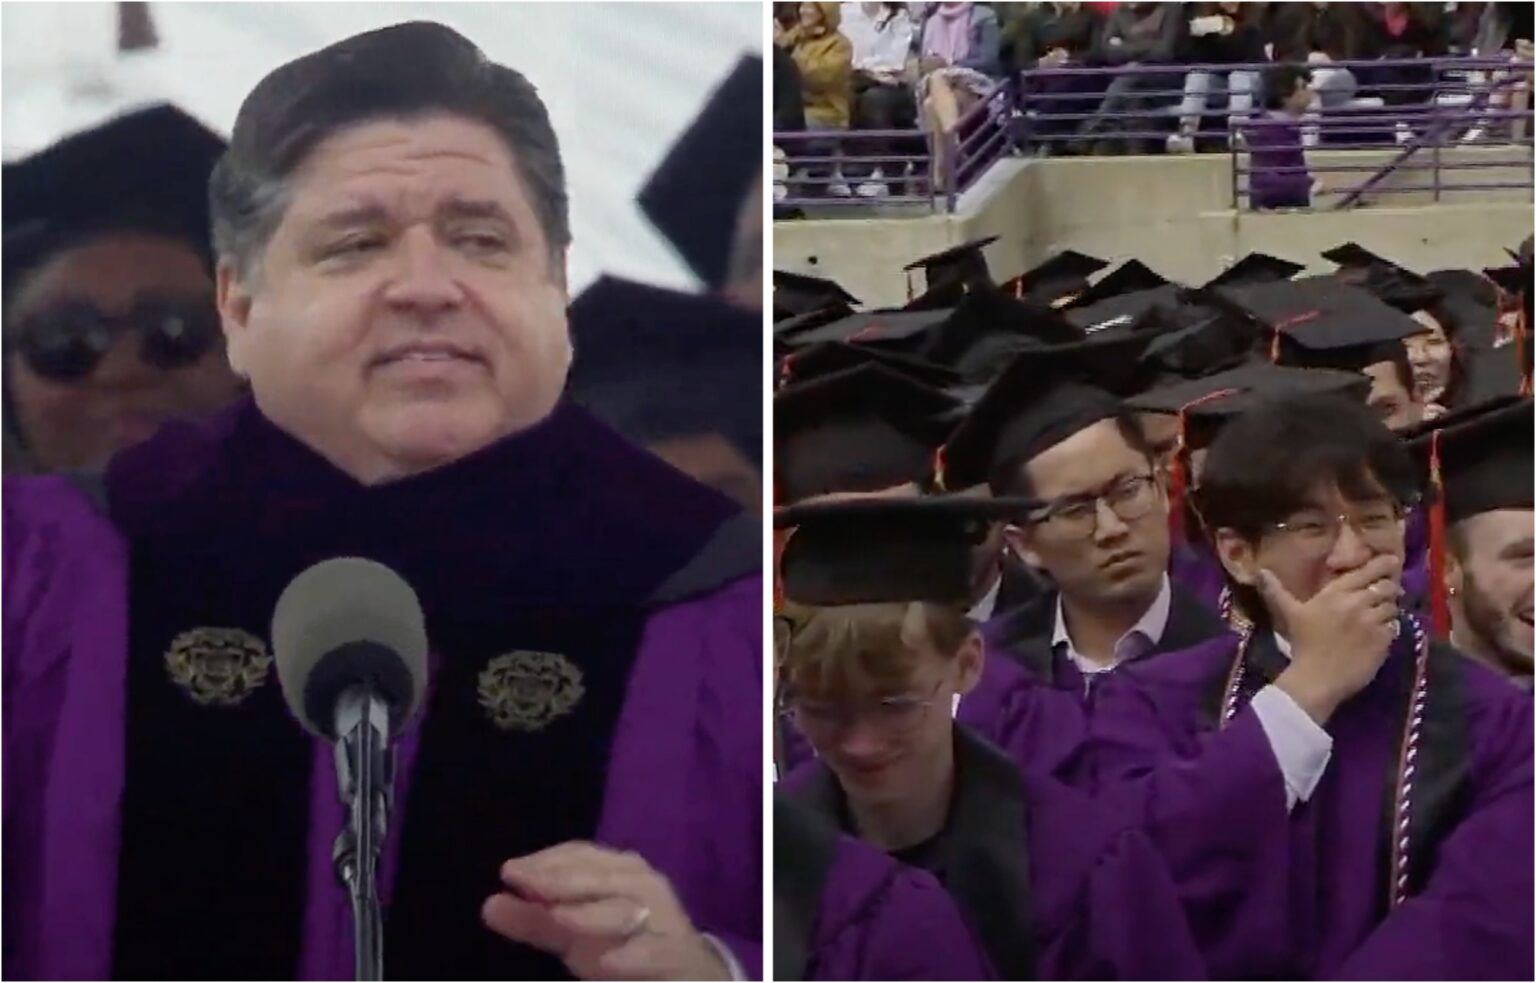 'How to spot an idiot' graduation speech goes viral